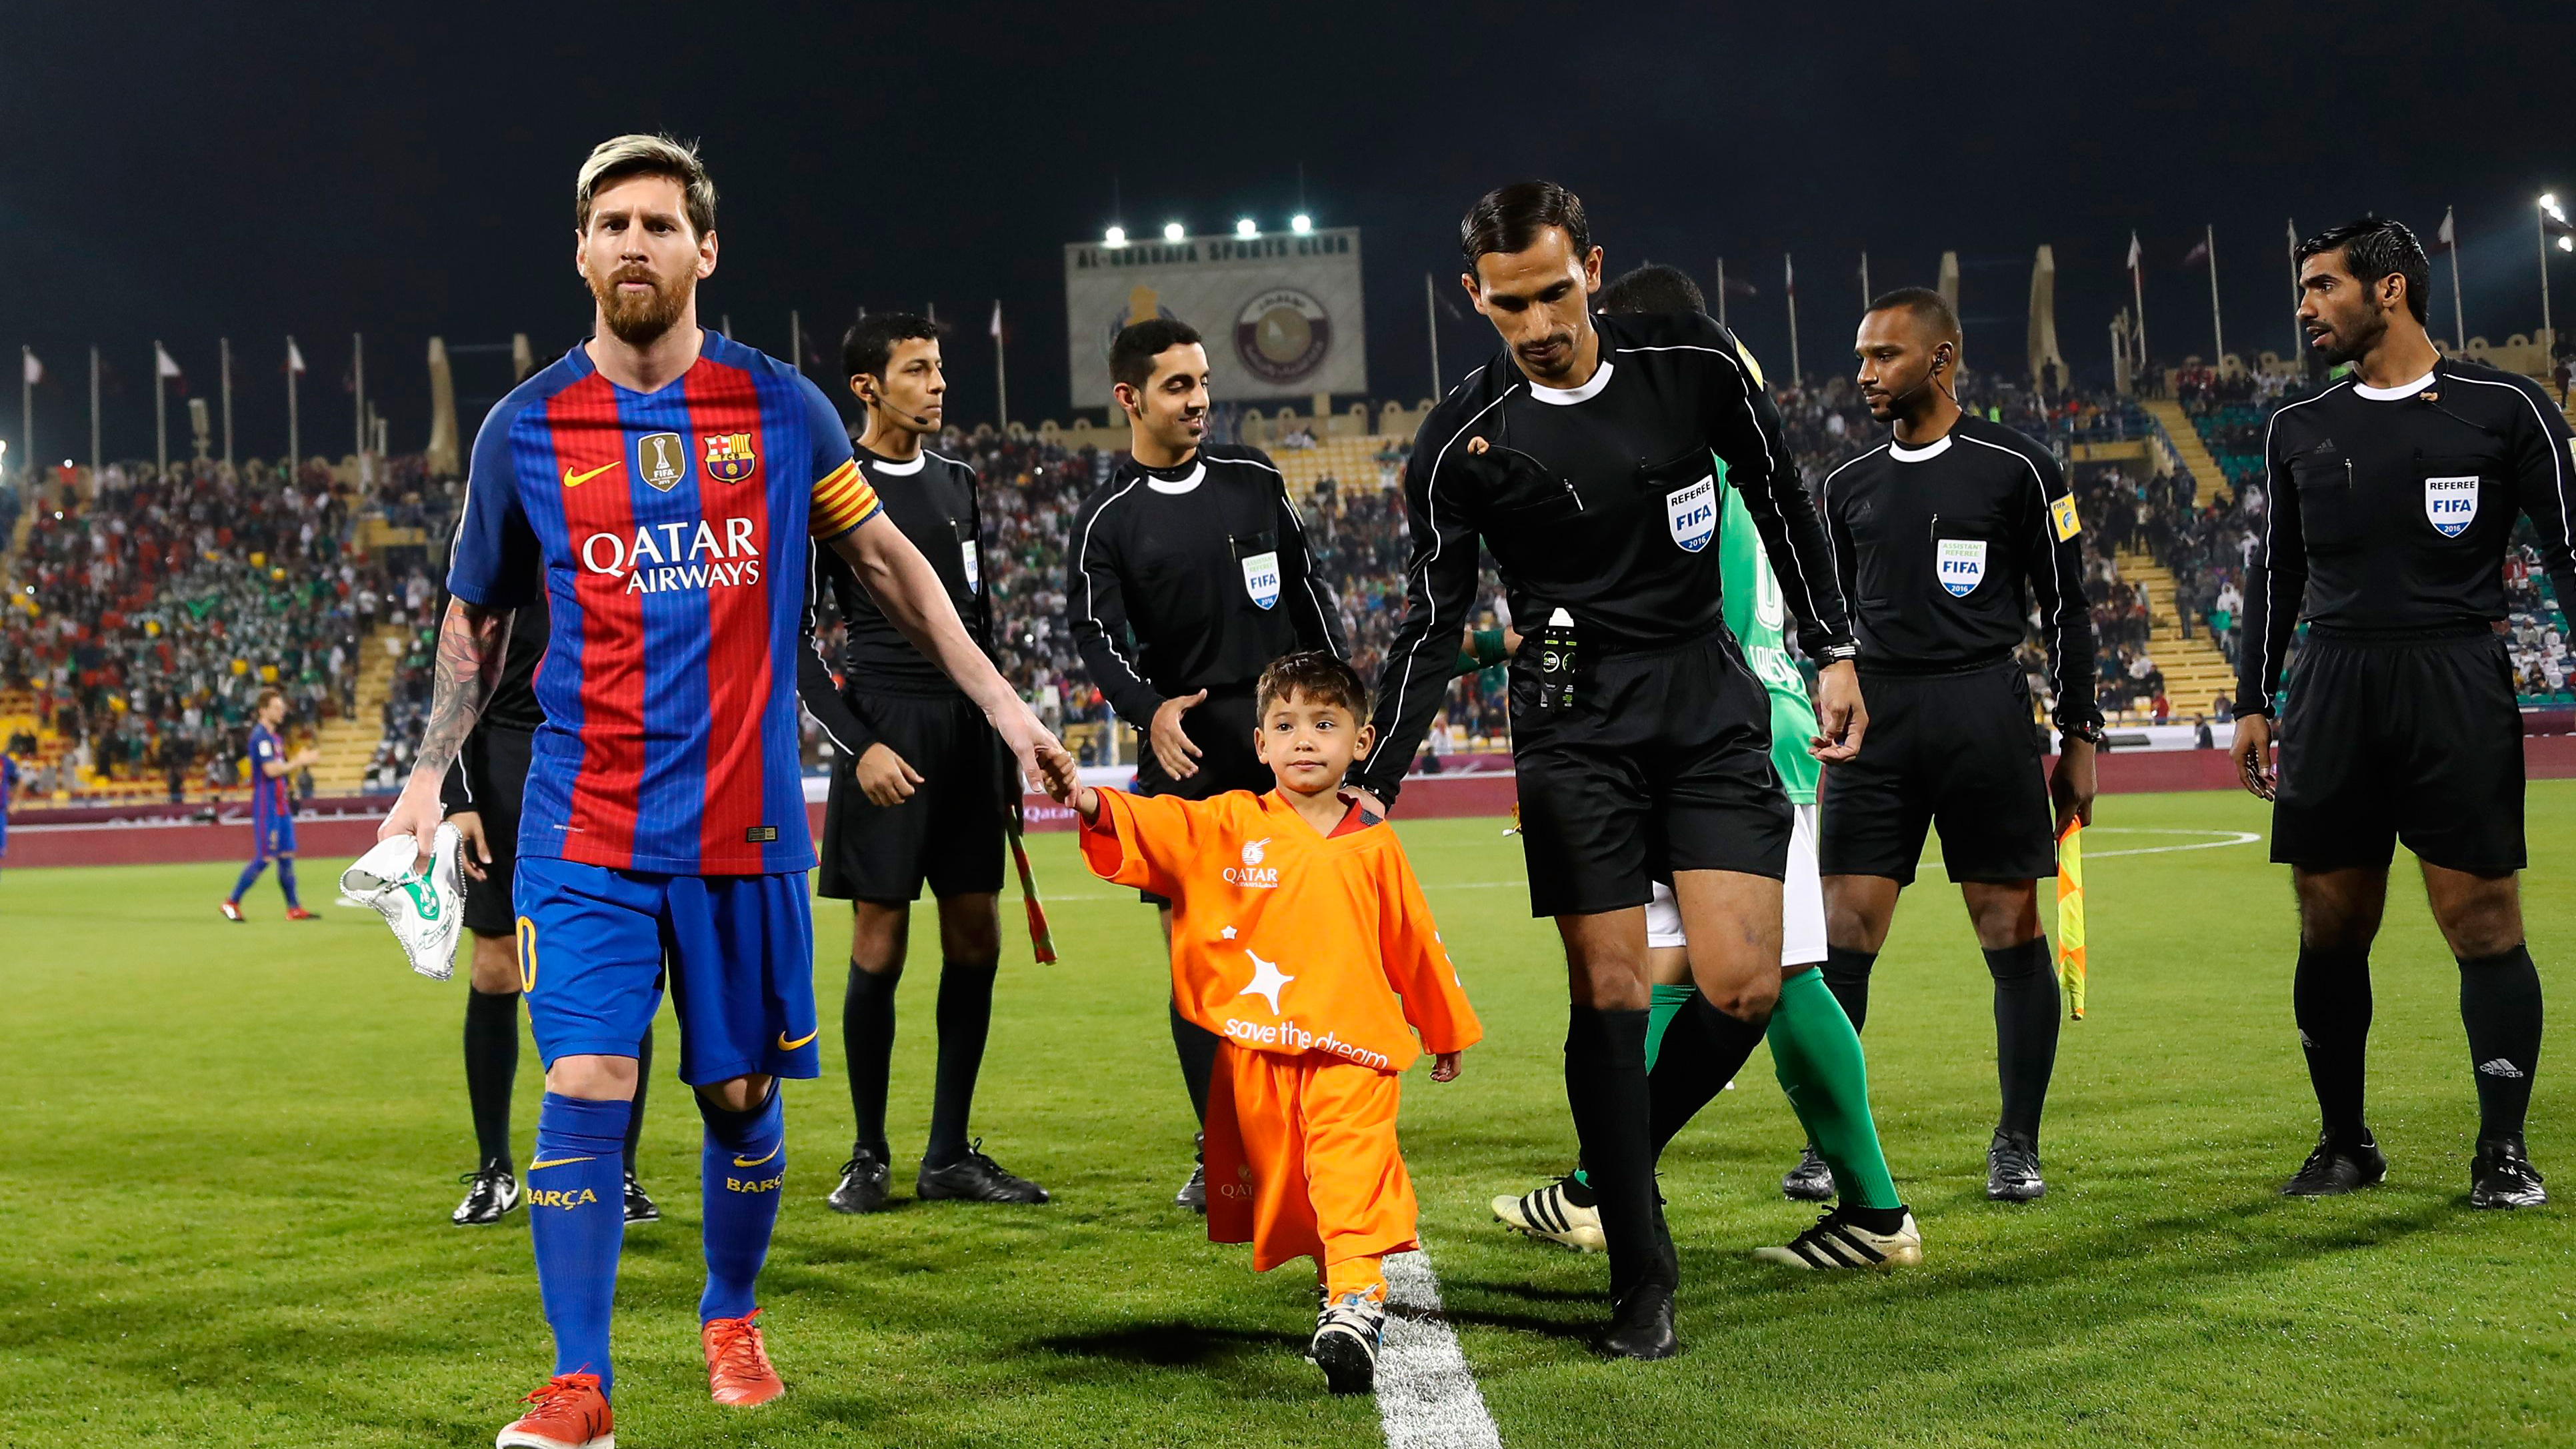 Murtaza-cumplió-su-sueño-de-conocer-a-Messi